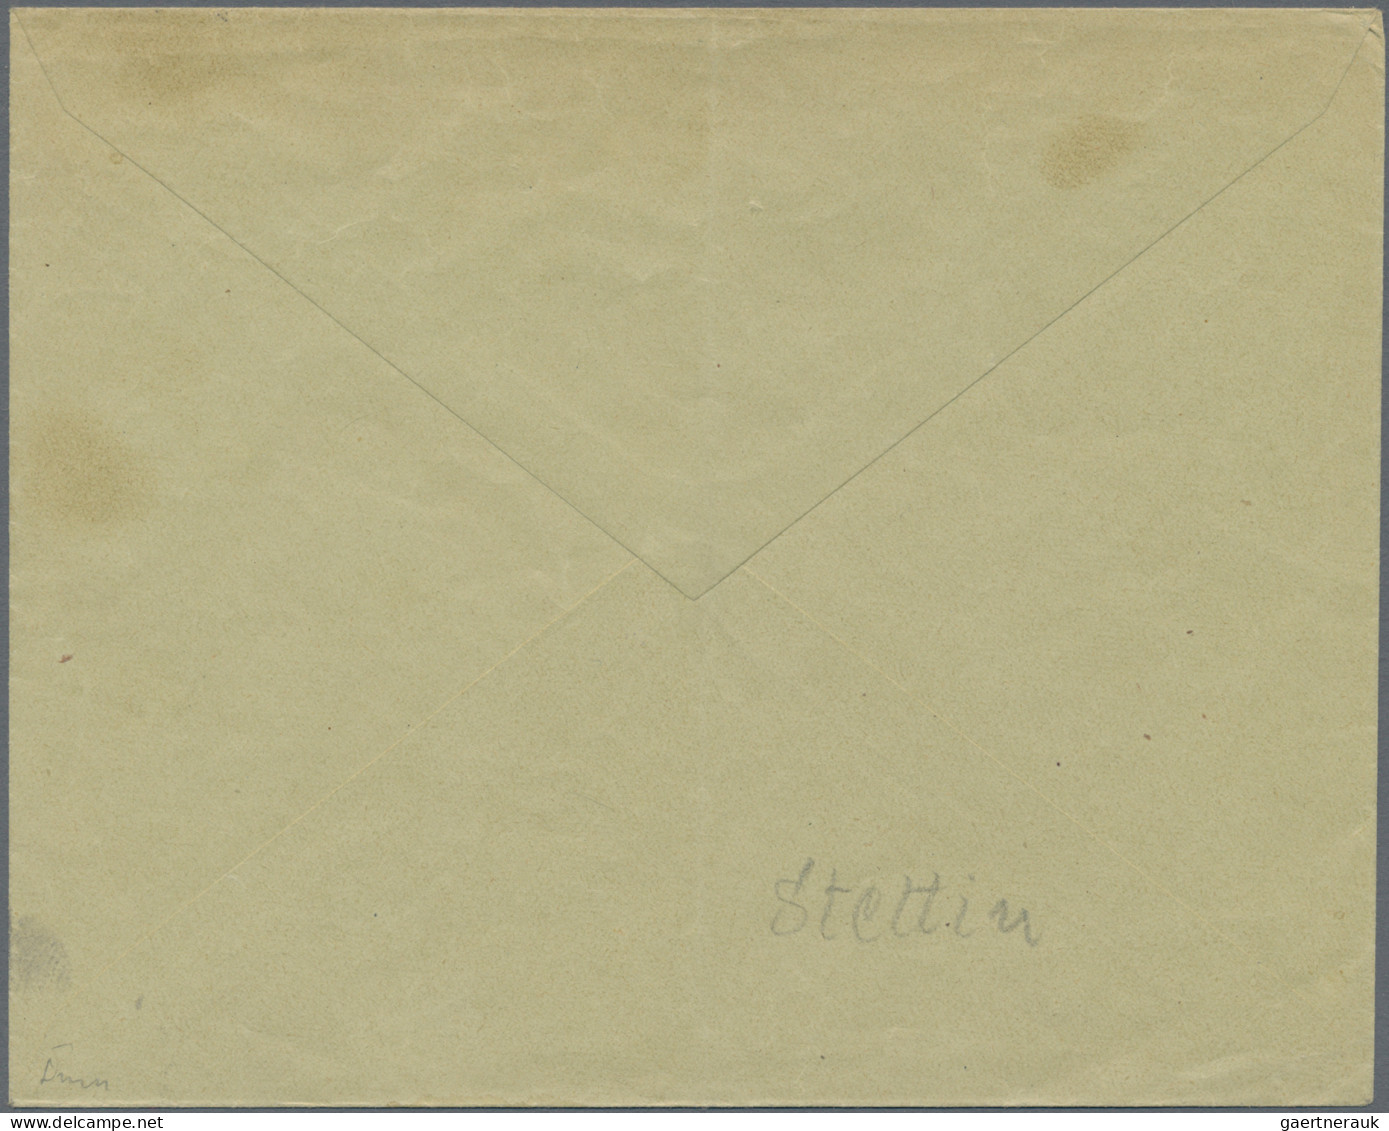 Deutsches Reich - Privatpost (Stadtpost): STETTIN/Hansa, 1898, Brief (Mittelbug - Private & Local Mails